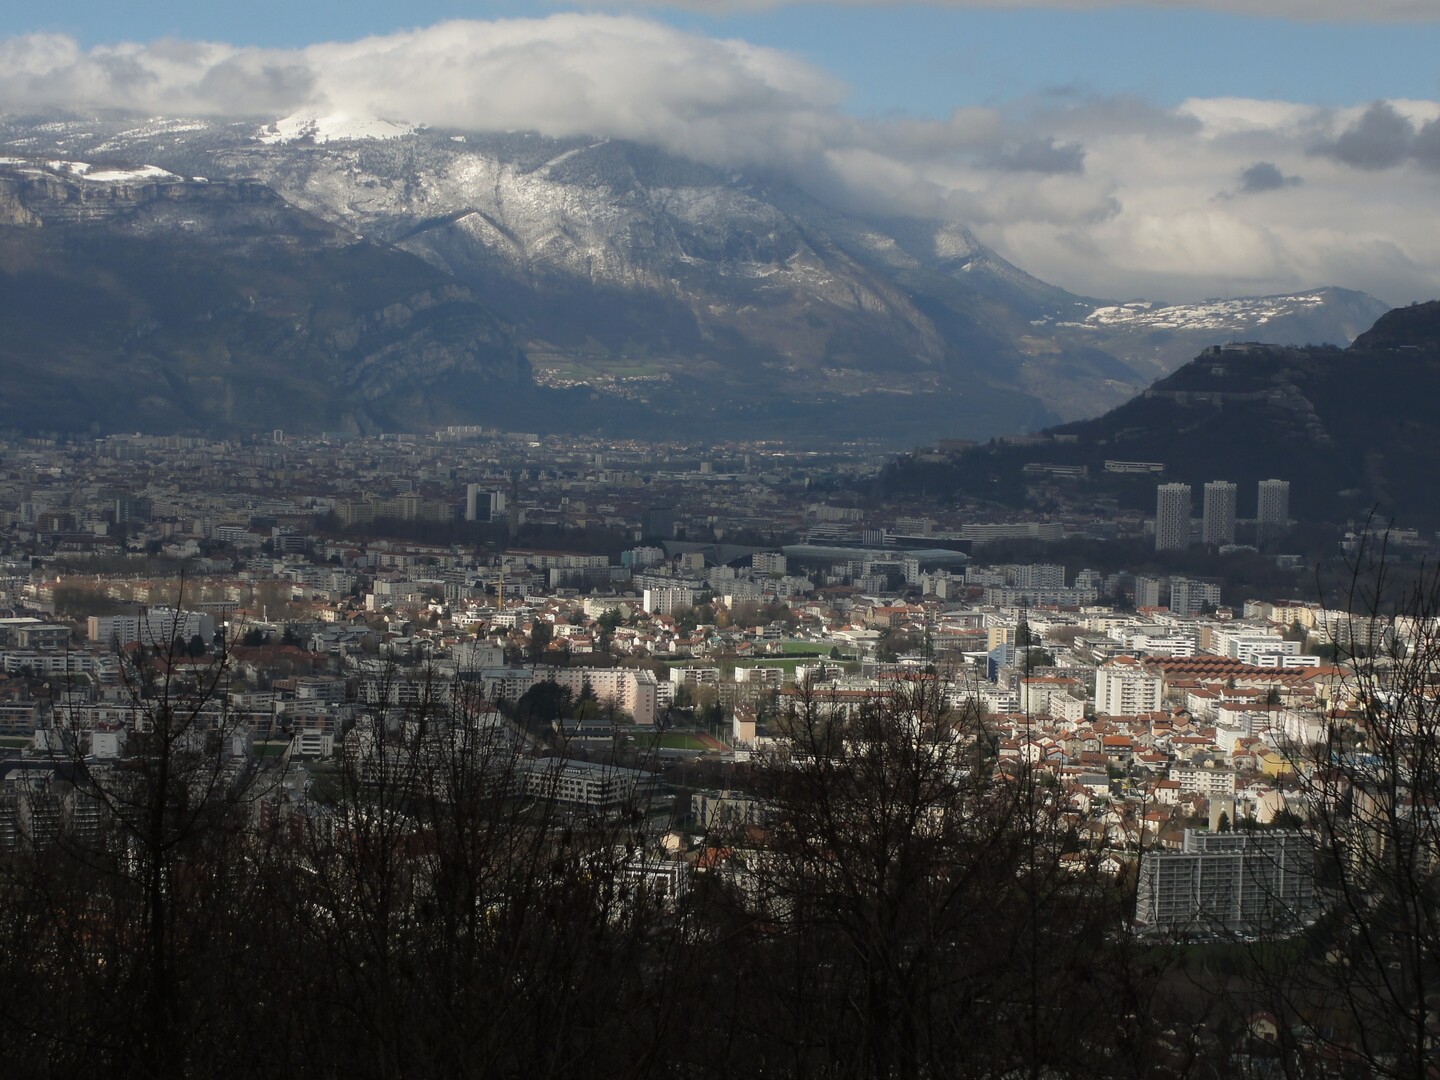 Blick auf Grenoble und die Bastille von der Nordauffahrt aus